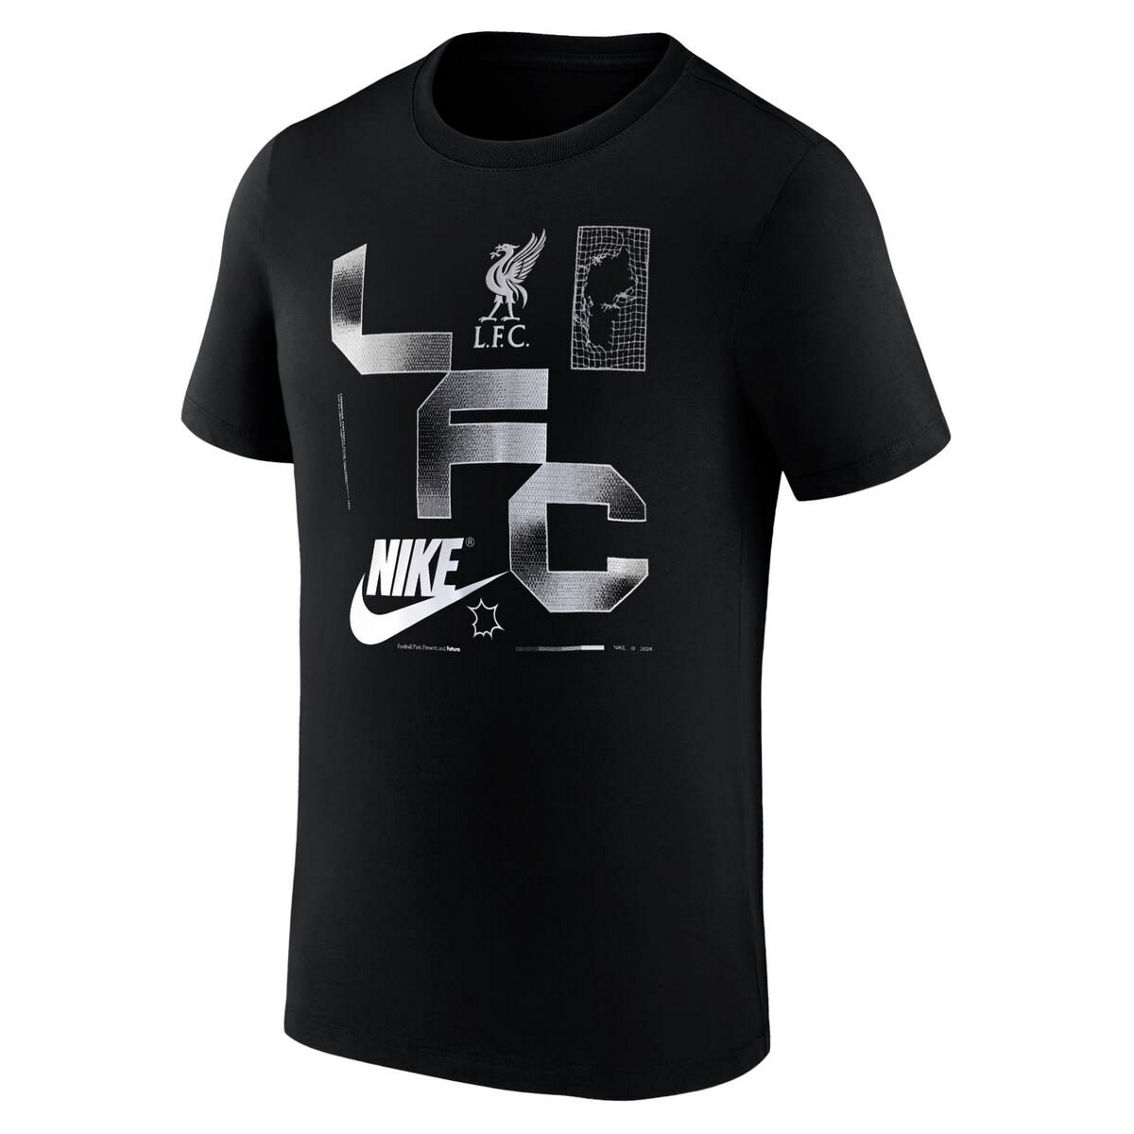 Nike Men's Black Liverpool Futura T-Shirt - Image 3 of 4